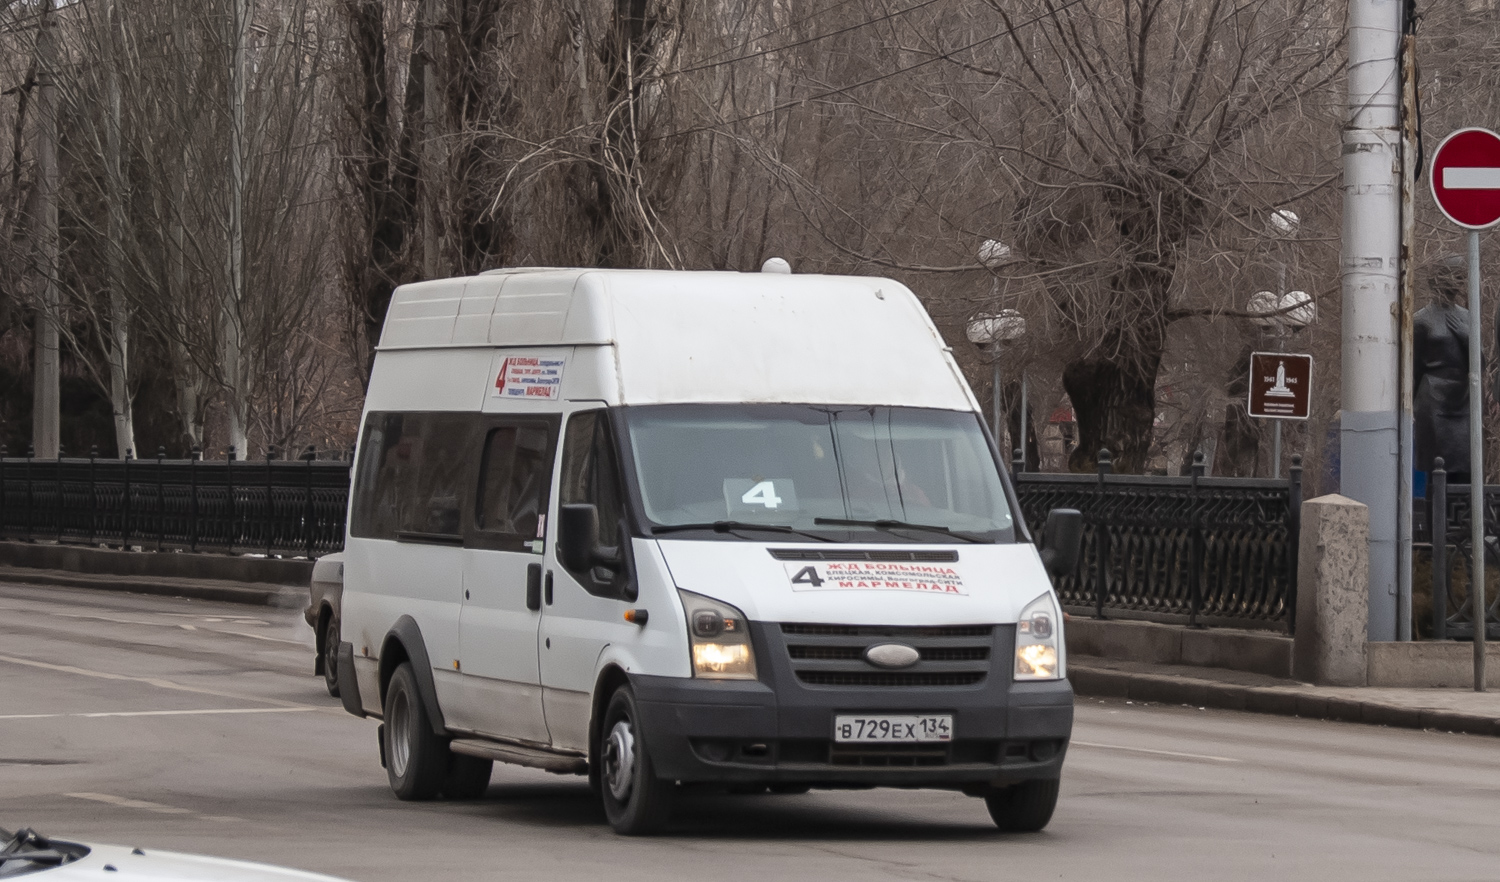 Volgográdi terület, GolAZ-3030 (Ford Transit) sz.: В 729 ЕХ 134